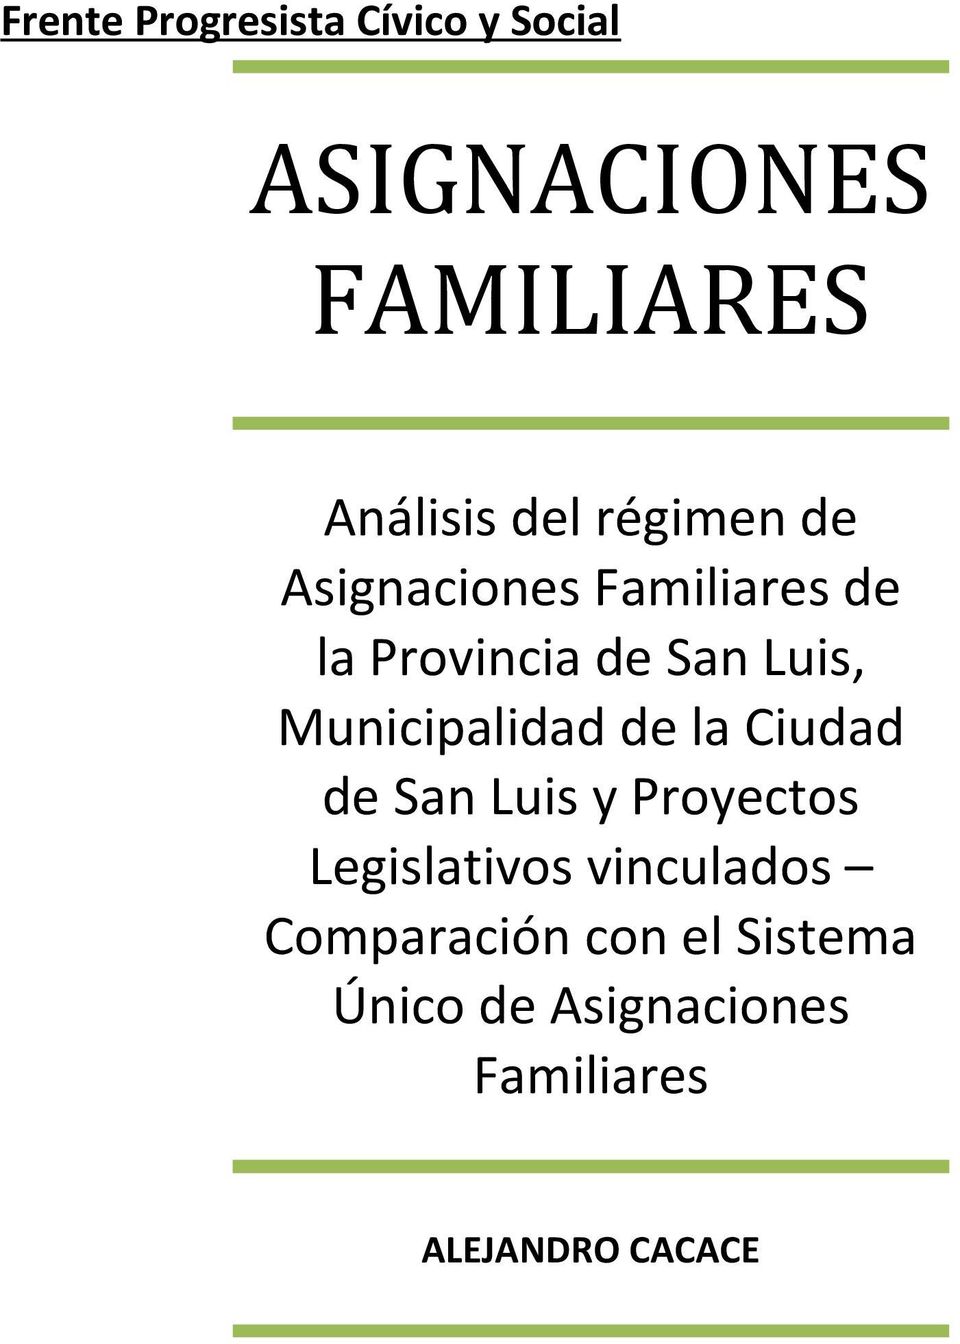 Municipalidad de la Ciudad de San Luis y Proyectos Legislativos